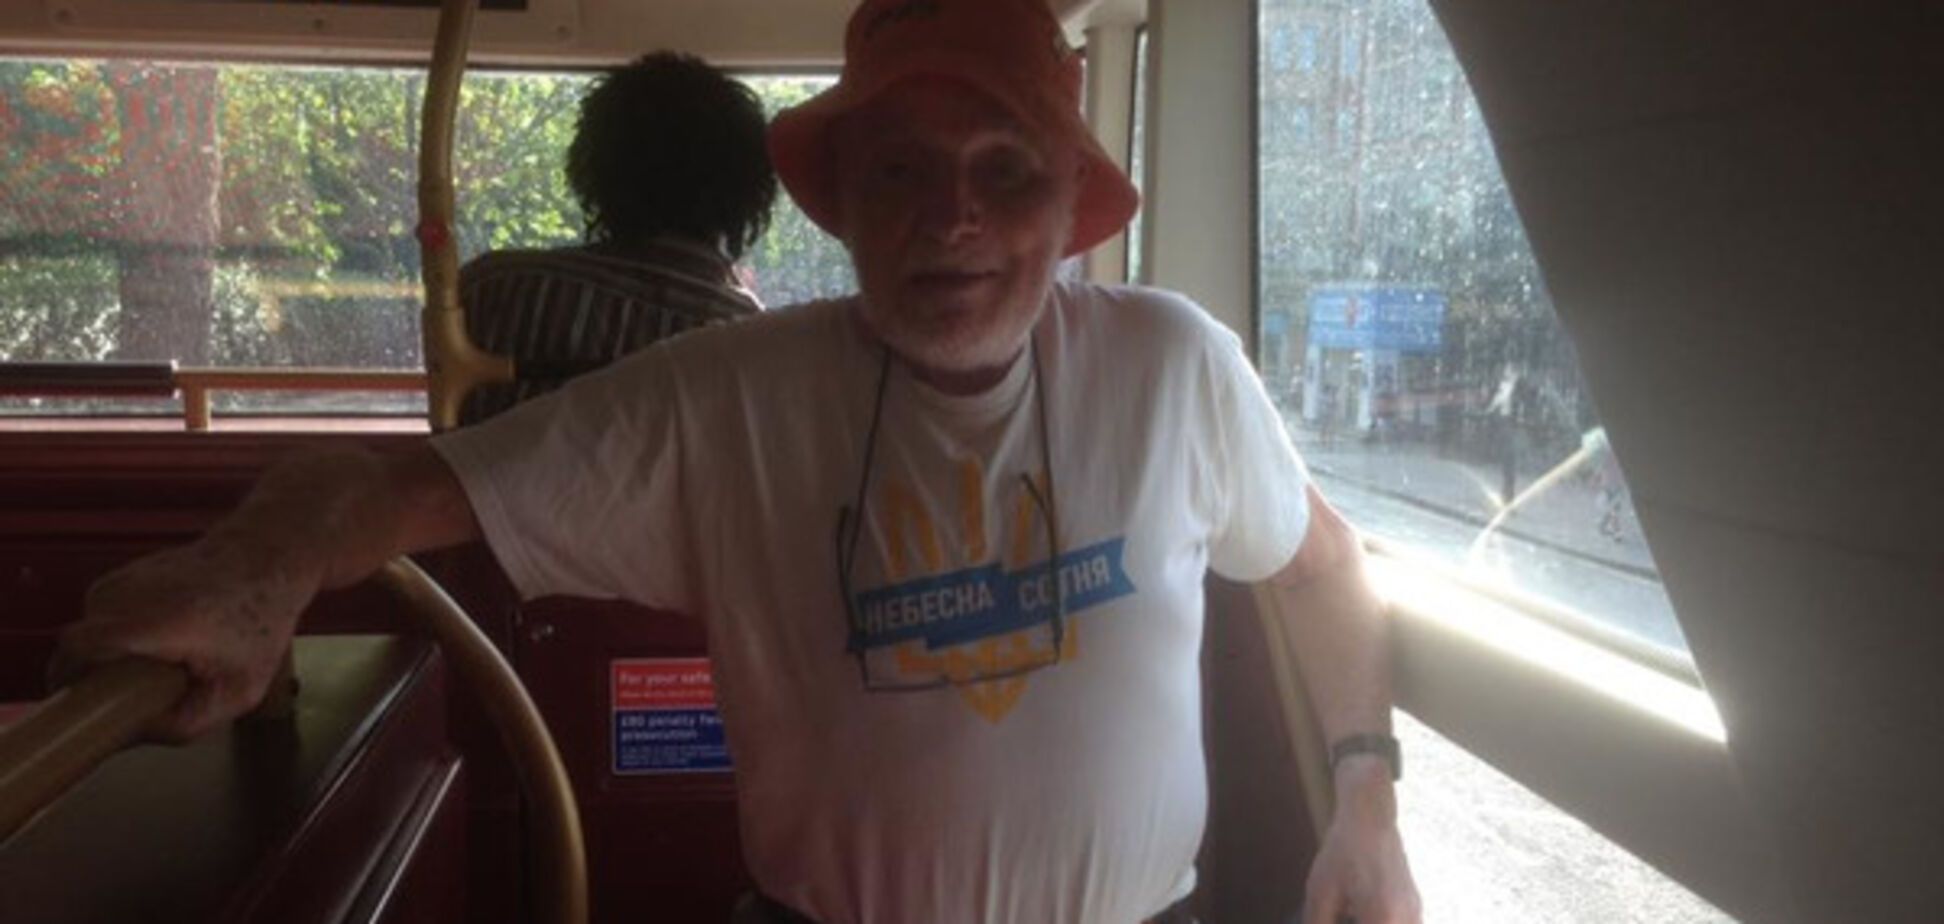 Лондон наш! Дедушка в проукраинской футболке растрогал сеть